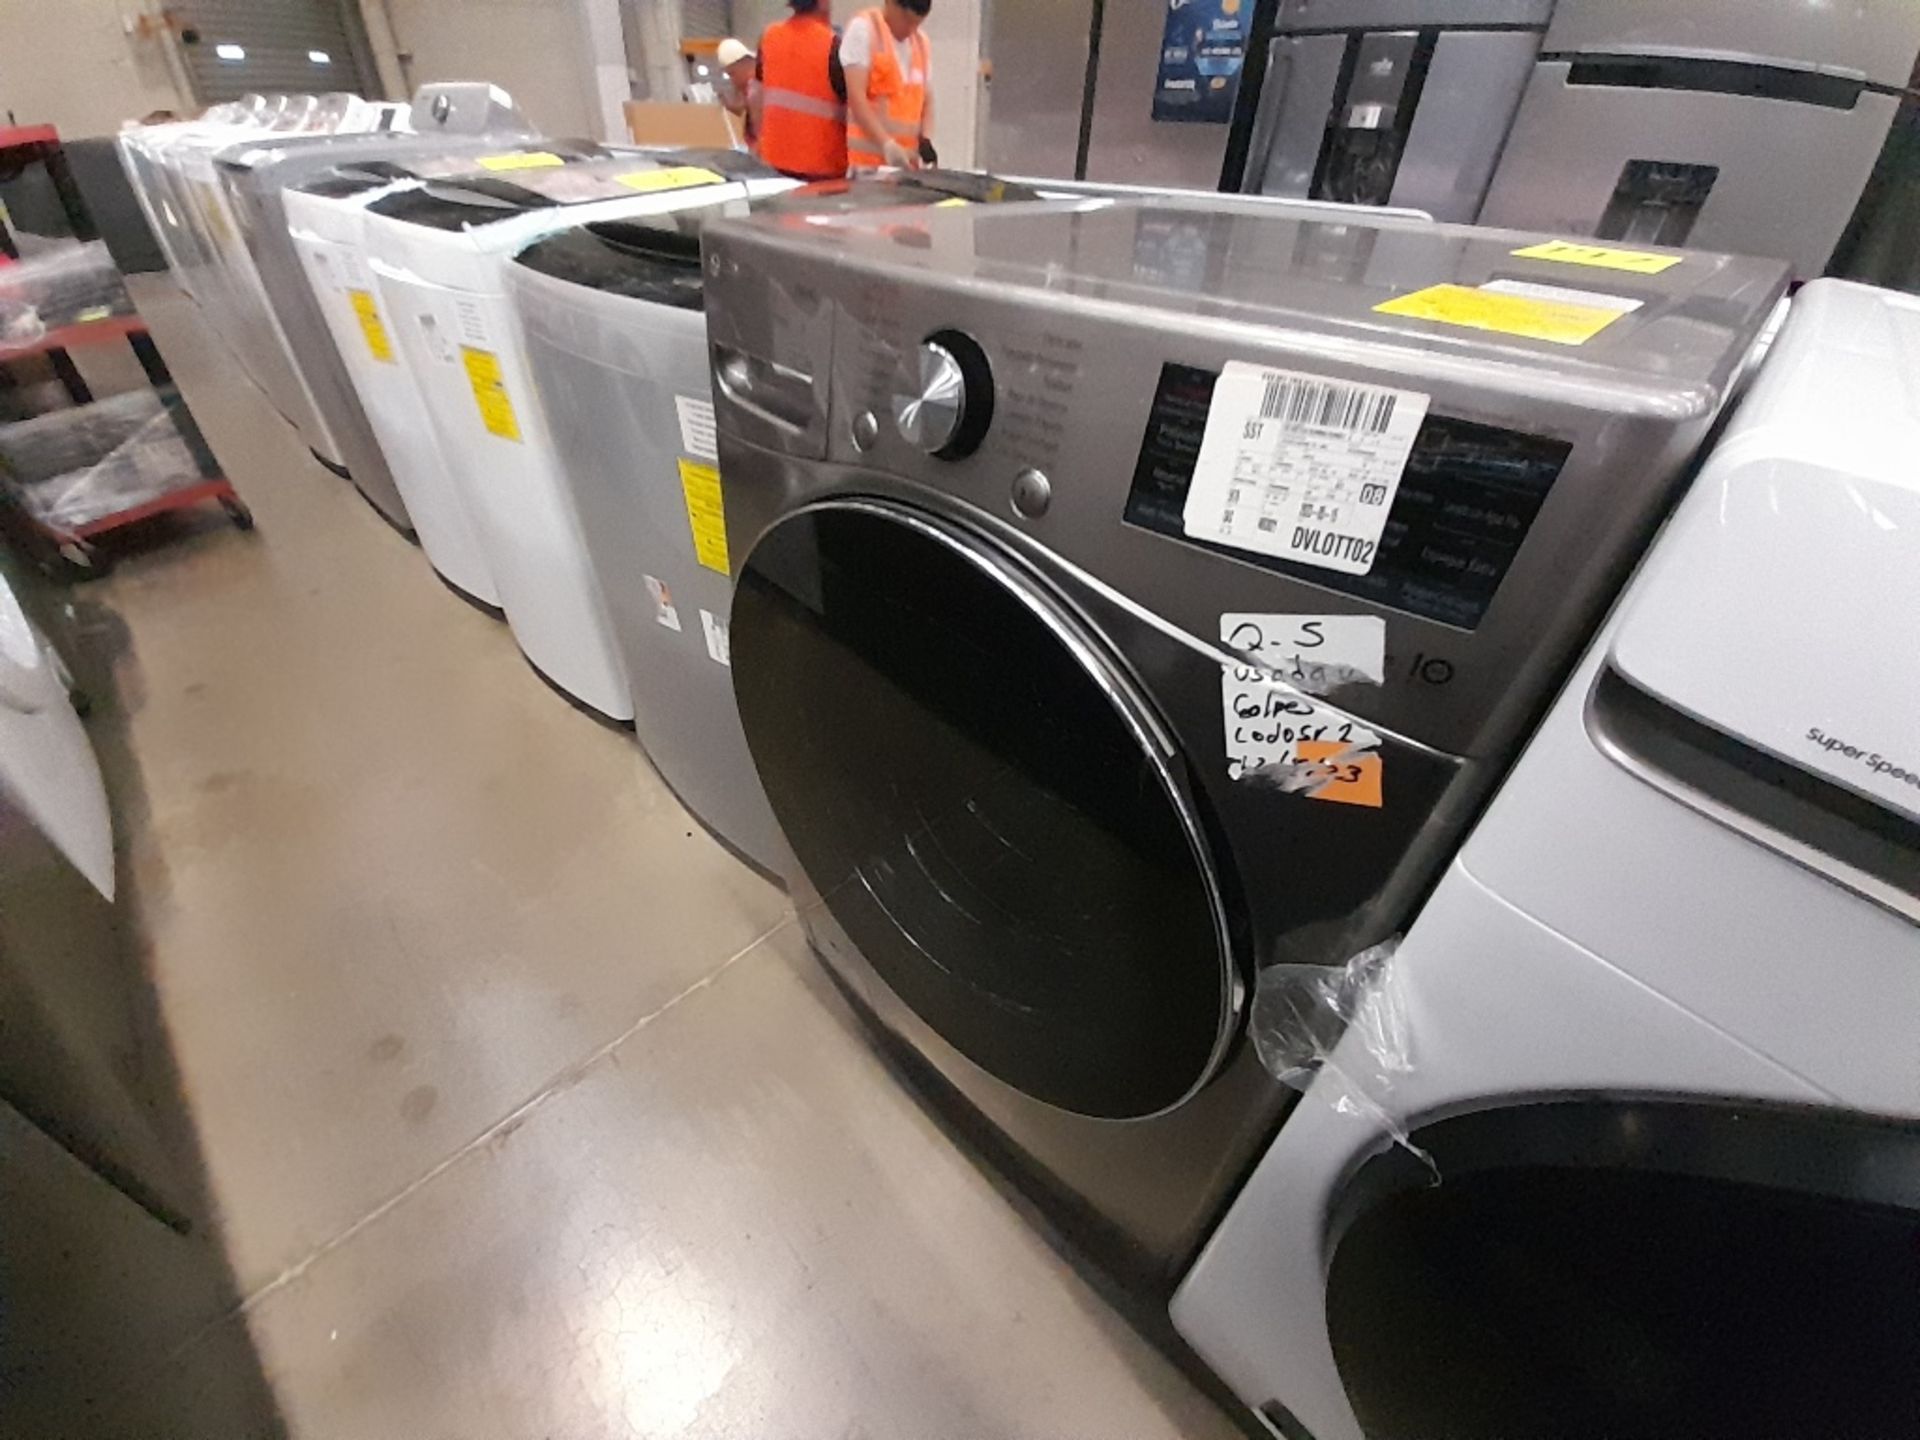 Lote de 1 lavadora y 1 Lavasecadora contiene: 1 lavadora de 18 KG, Marca LG, Modelo WT18DV6, Serie - Image 3 of 8